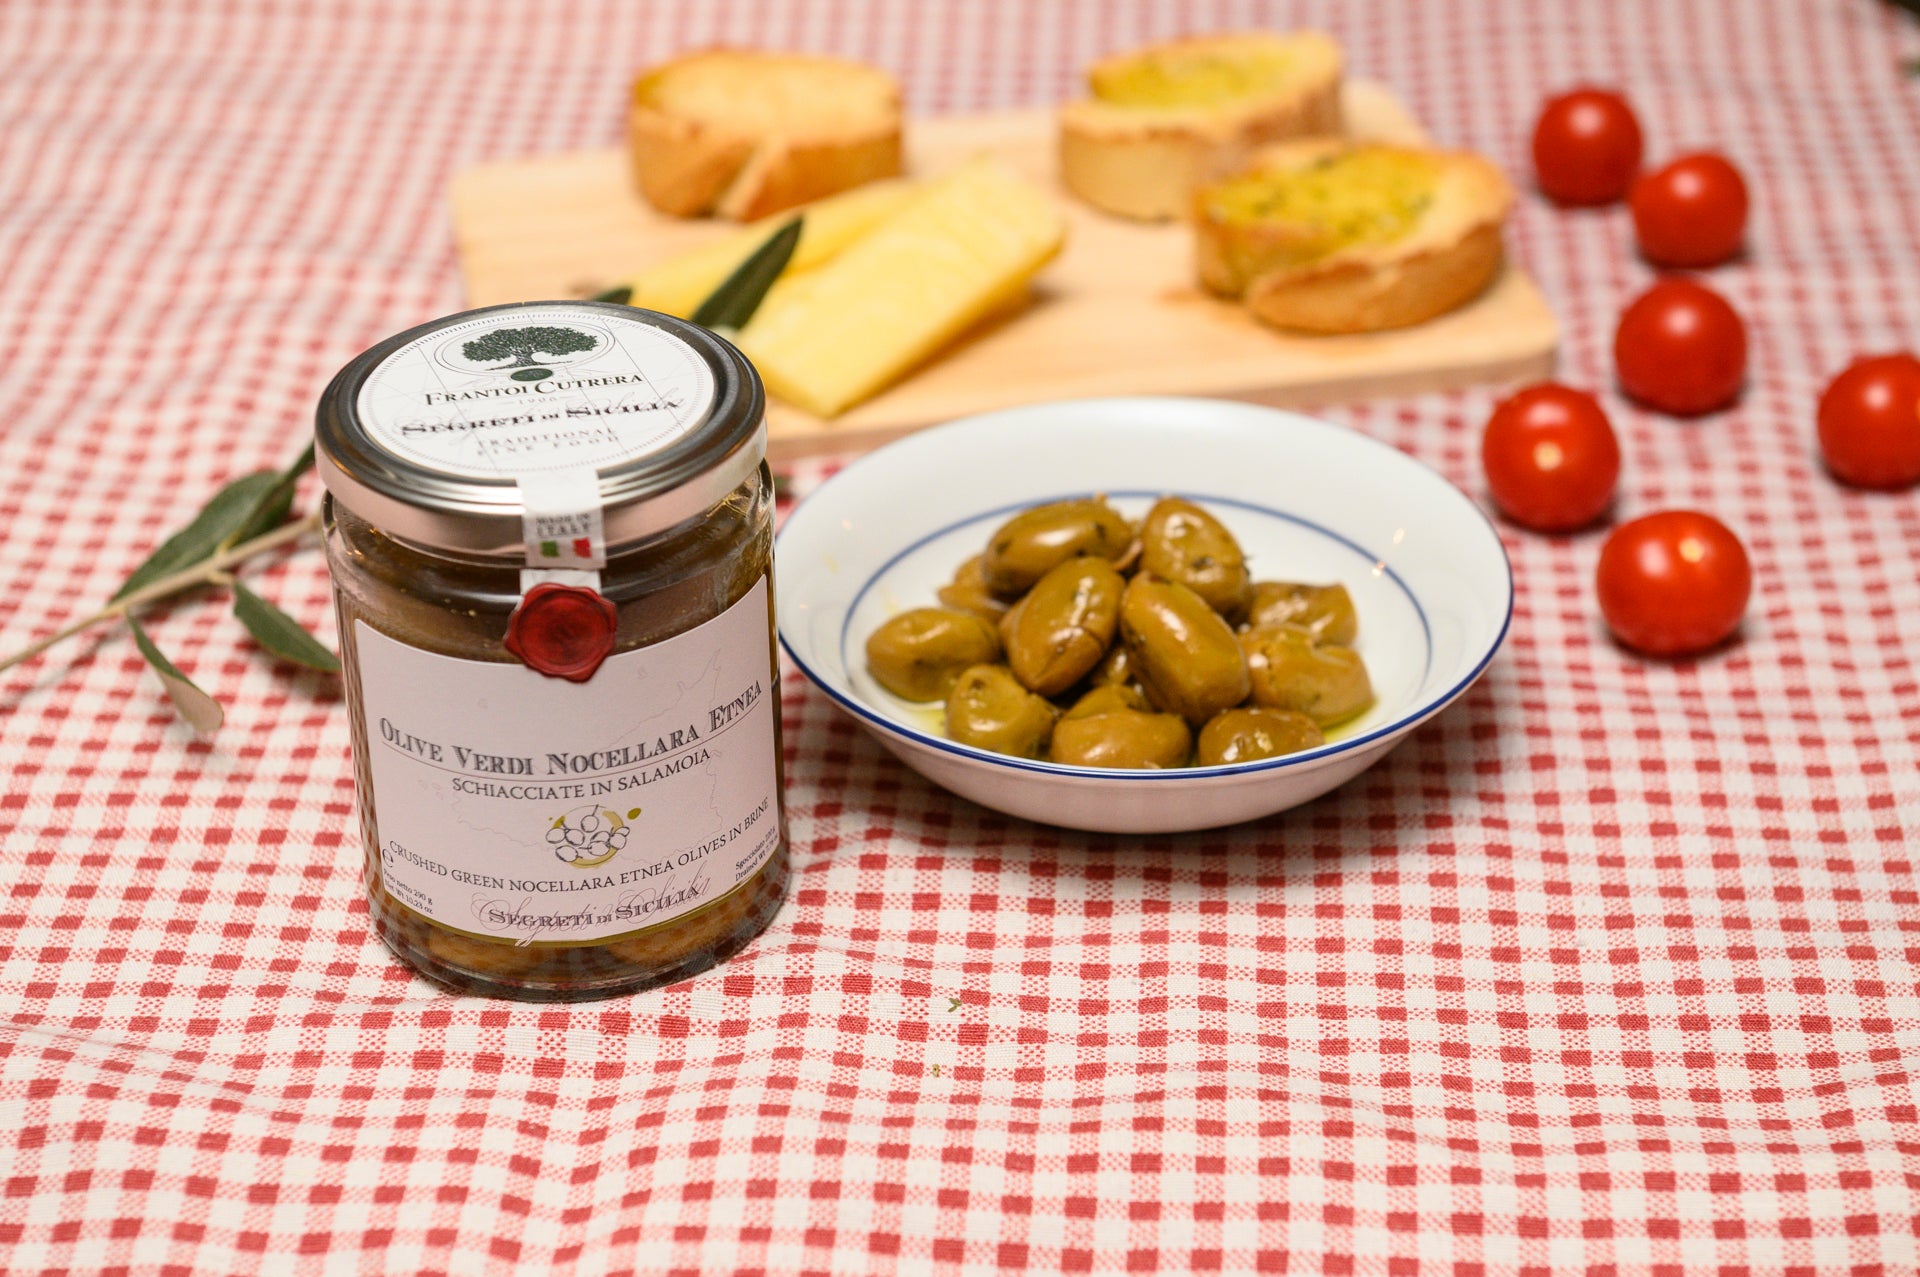 Crushed Nocellara Etnea green olives in brine – Secrets of Sicily